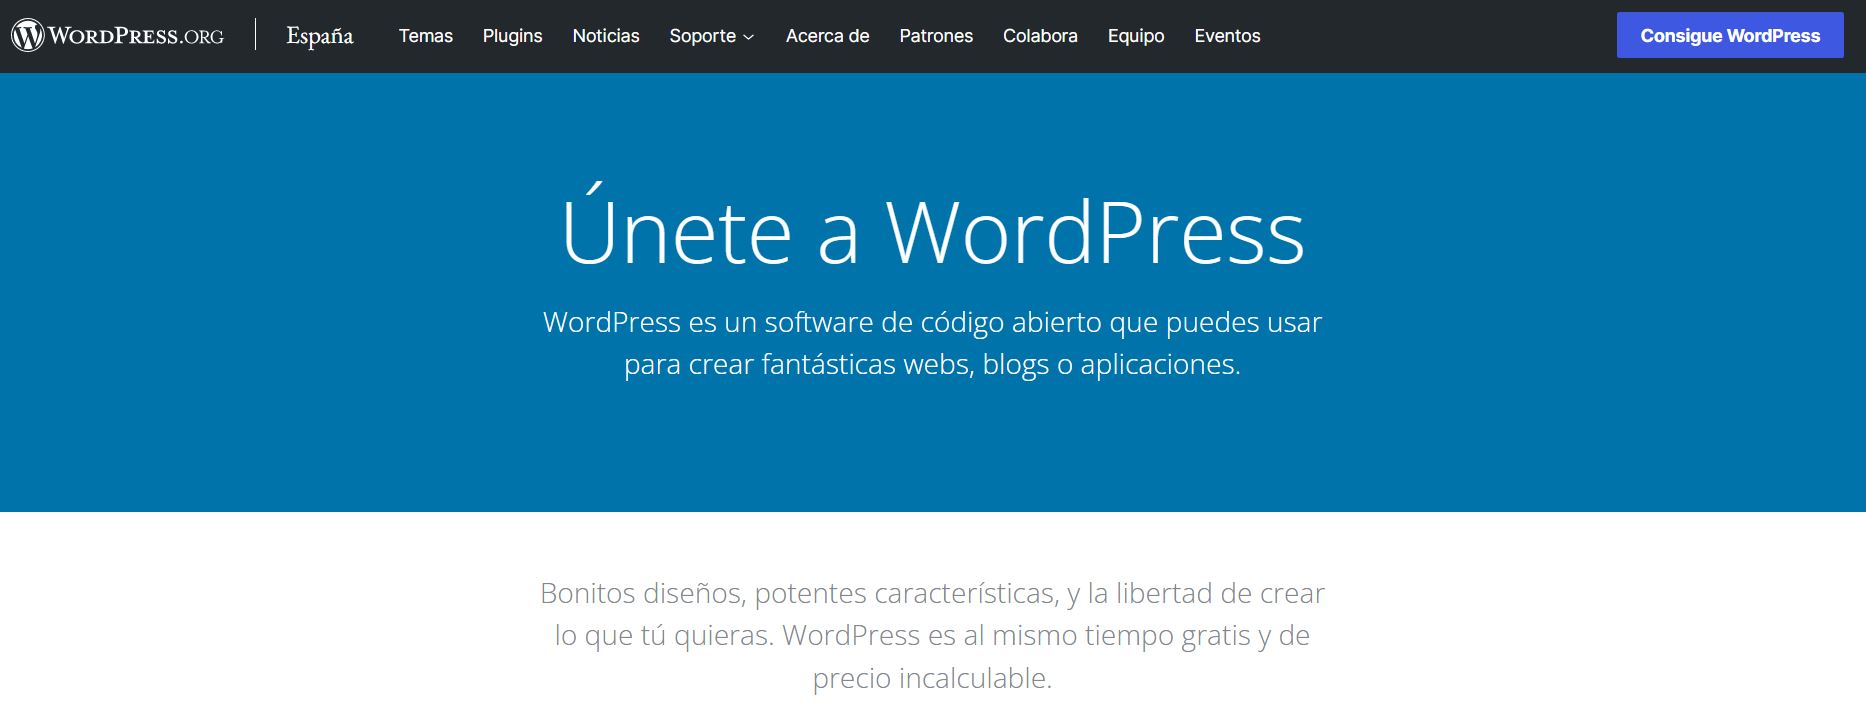 El sitio web de WordPress.org